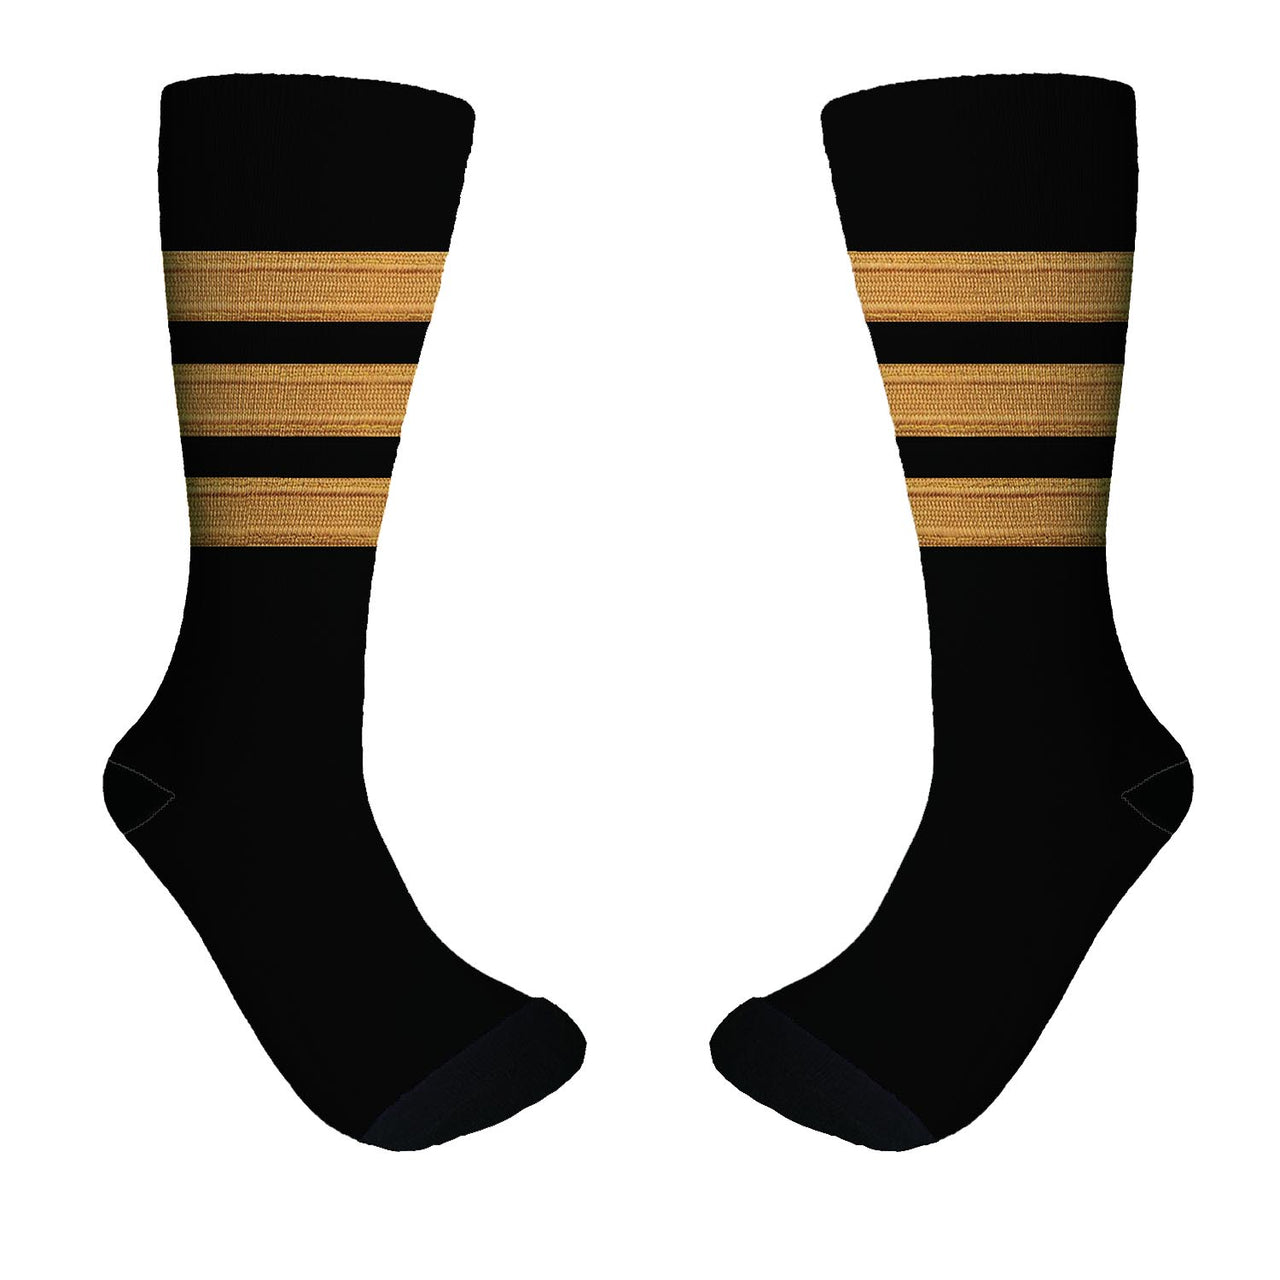 Pilot Epaulette (Golden) 3 Lines Designed Socks